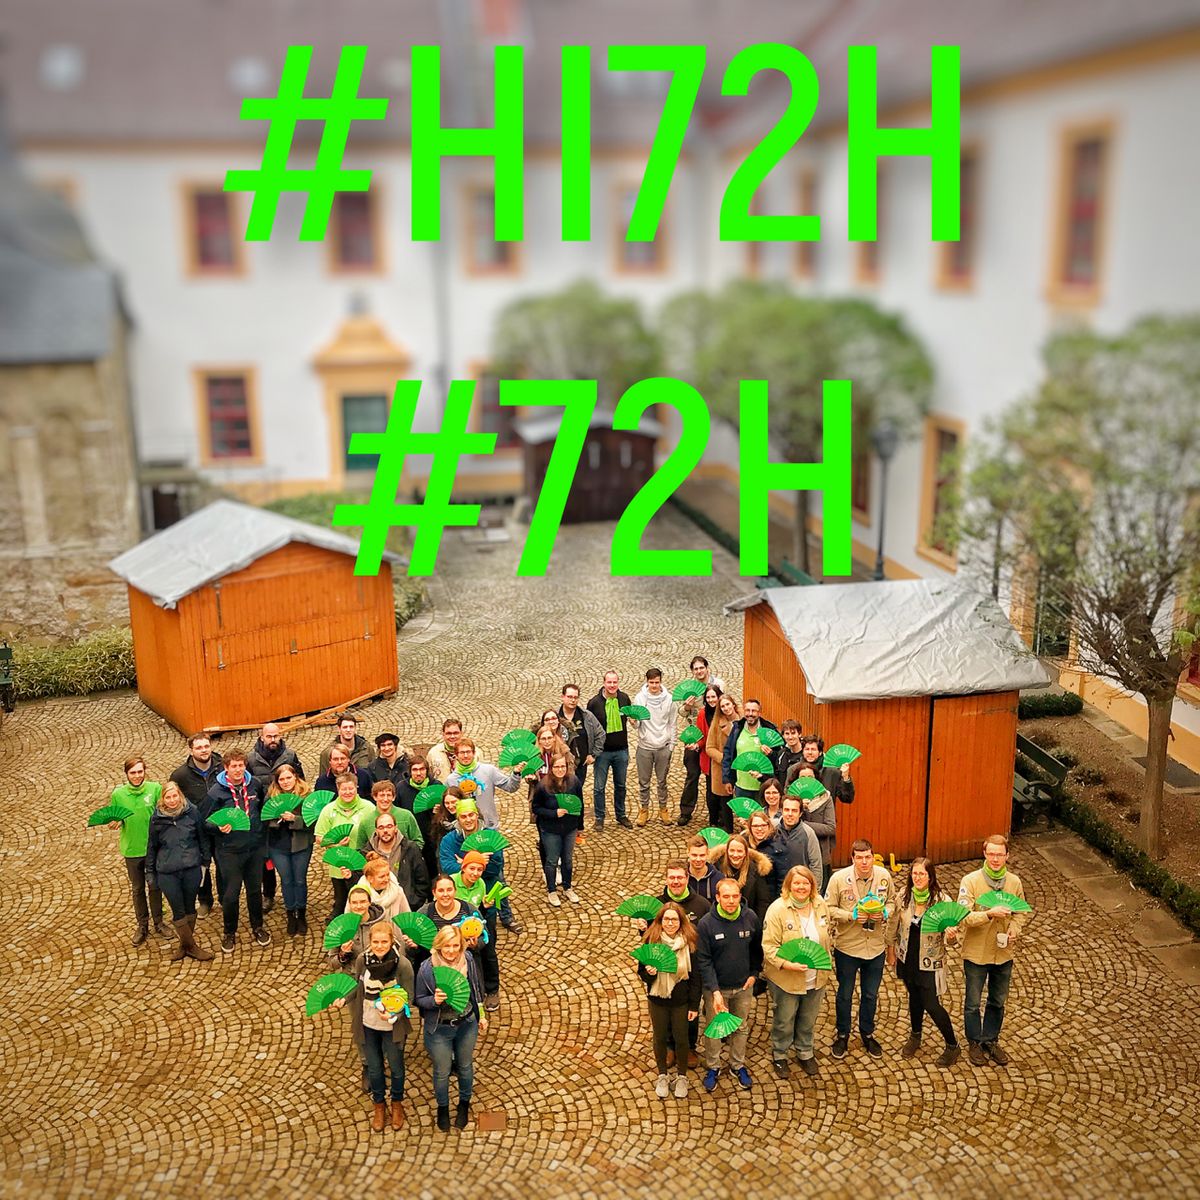 #HI72H #macheszudeineraktion #72H